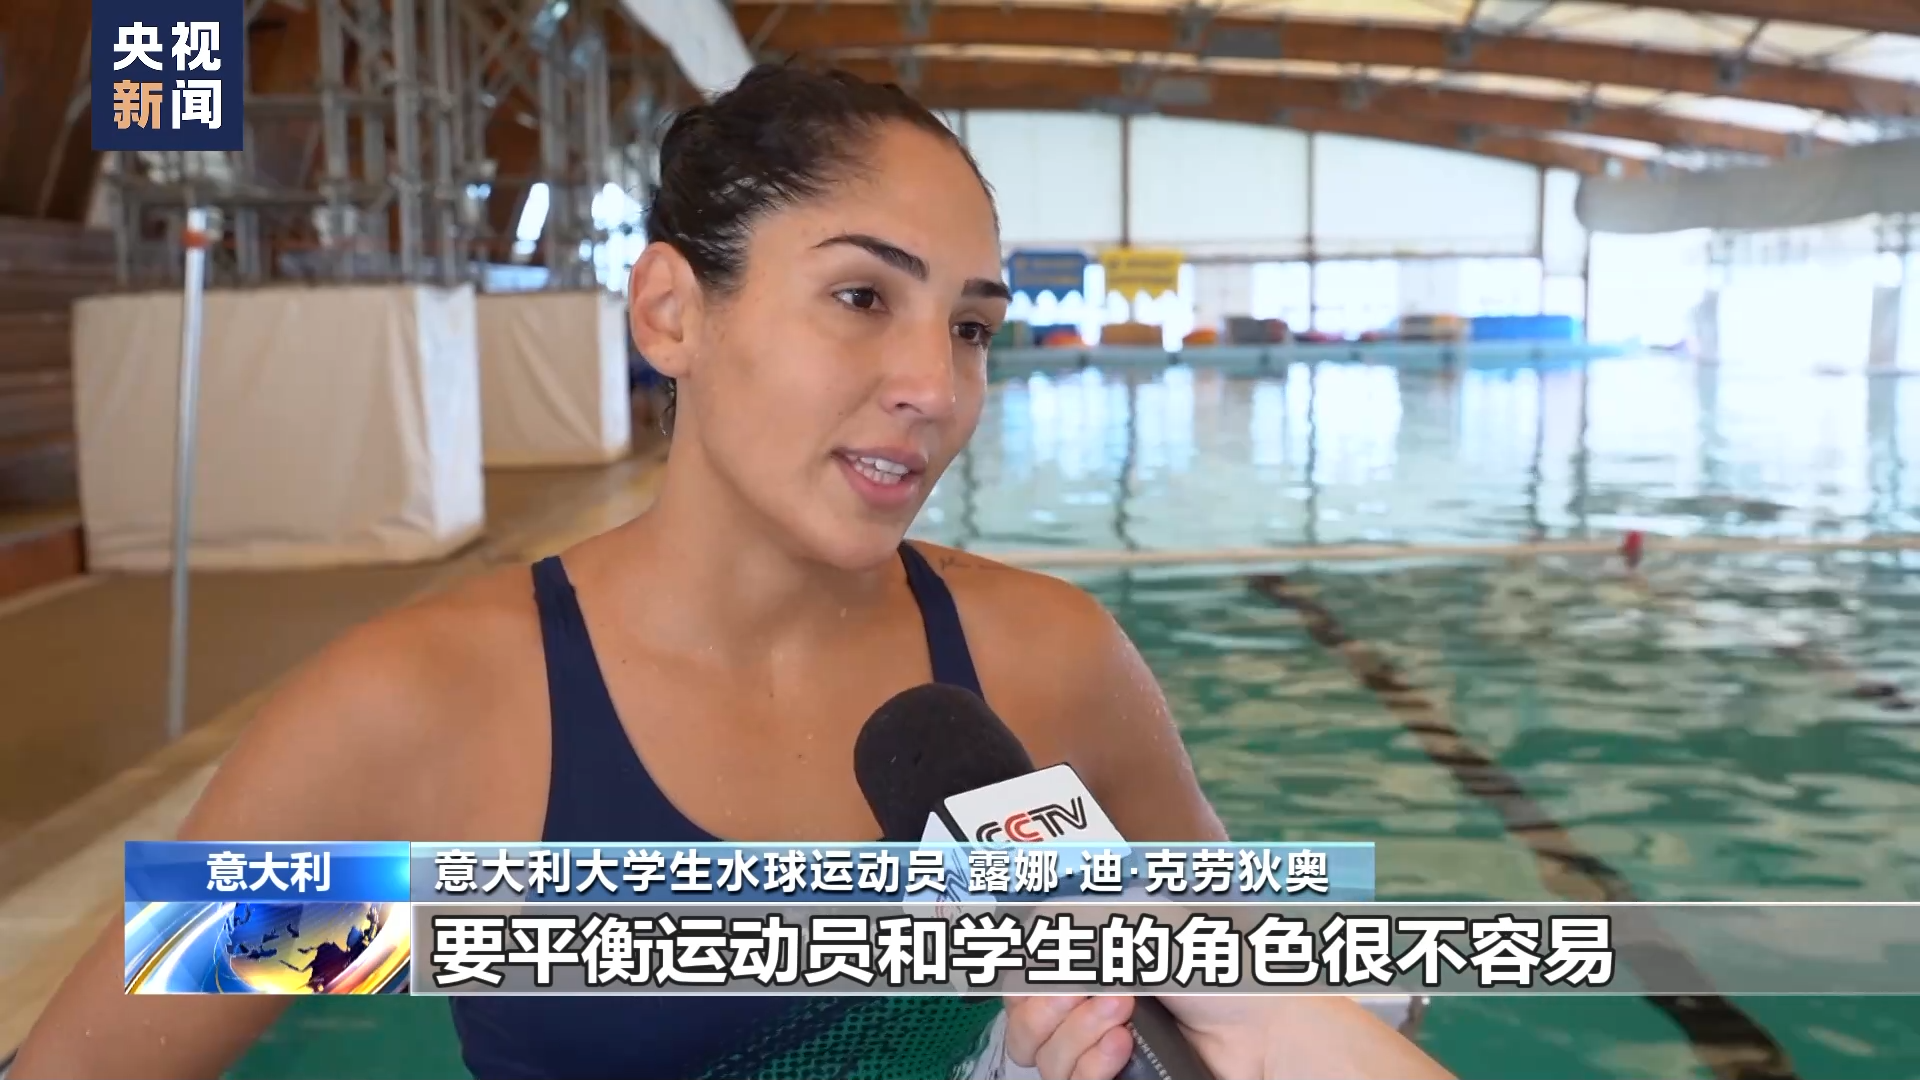 大運會即將開幕 意大利大學生女子水球隊緊張備戰